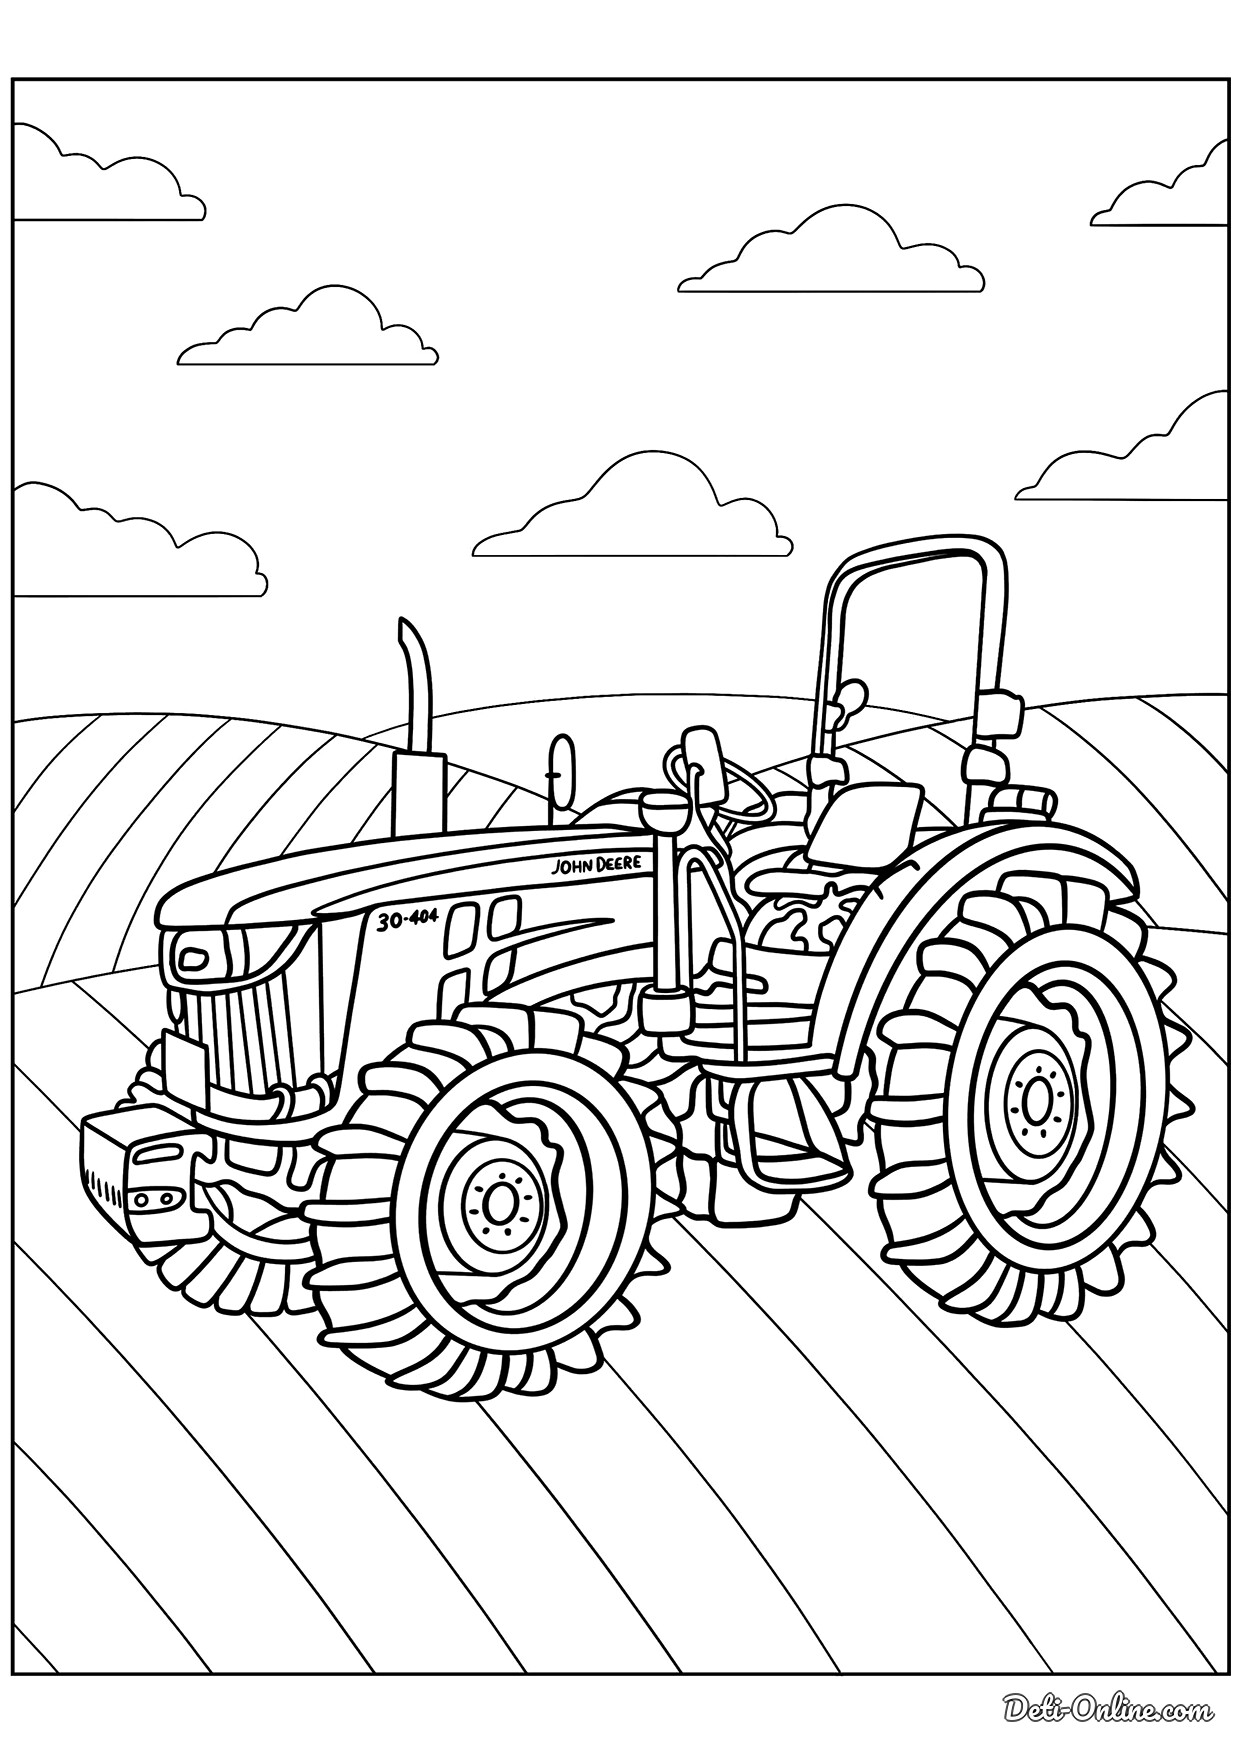 Раскраска Трактор для мальчиков распечатать бесплатно для детей